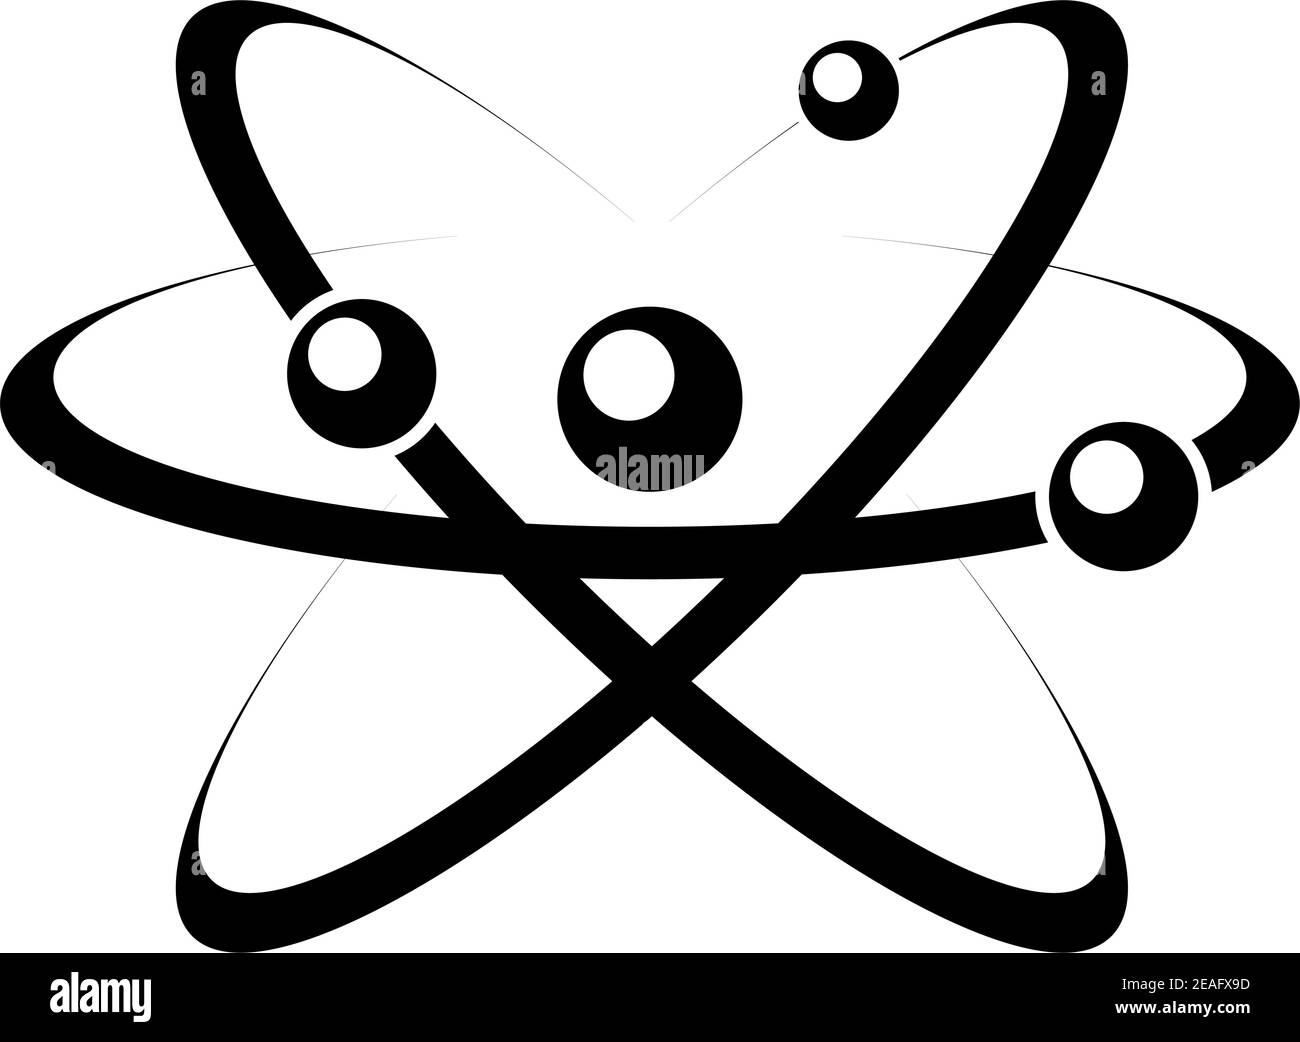 Ilustración en blanco y negro de un átomo con núcleo, protón, neutrón y electrón, aislado sobre fondo blanco Ilustración del Vector